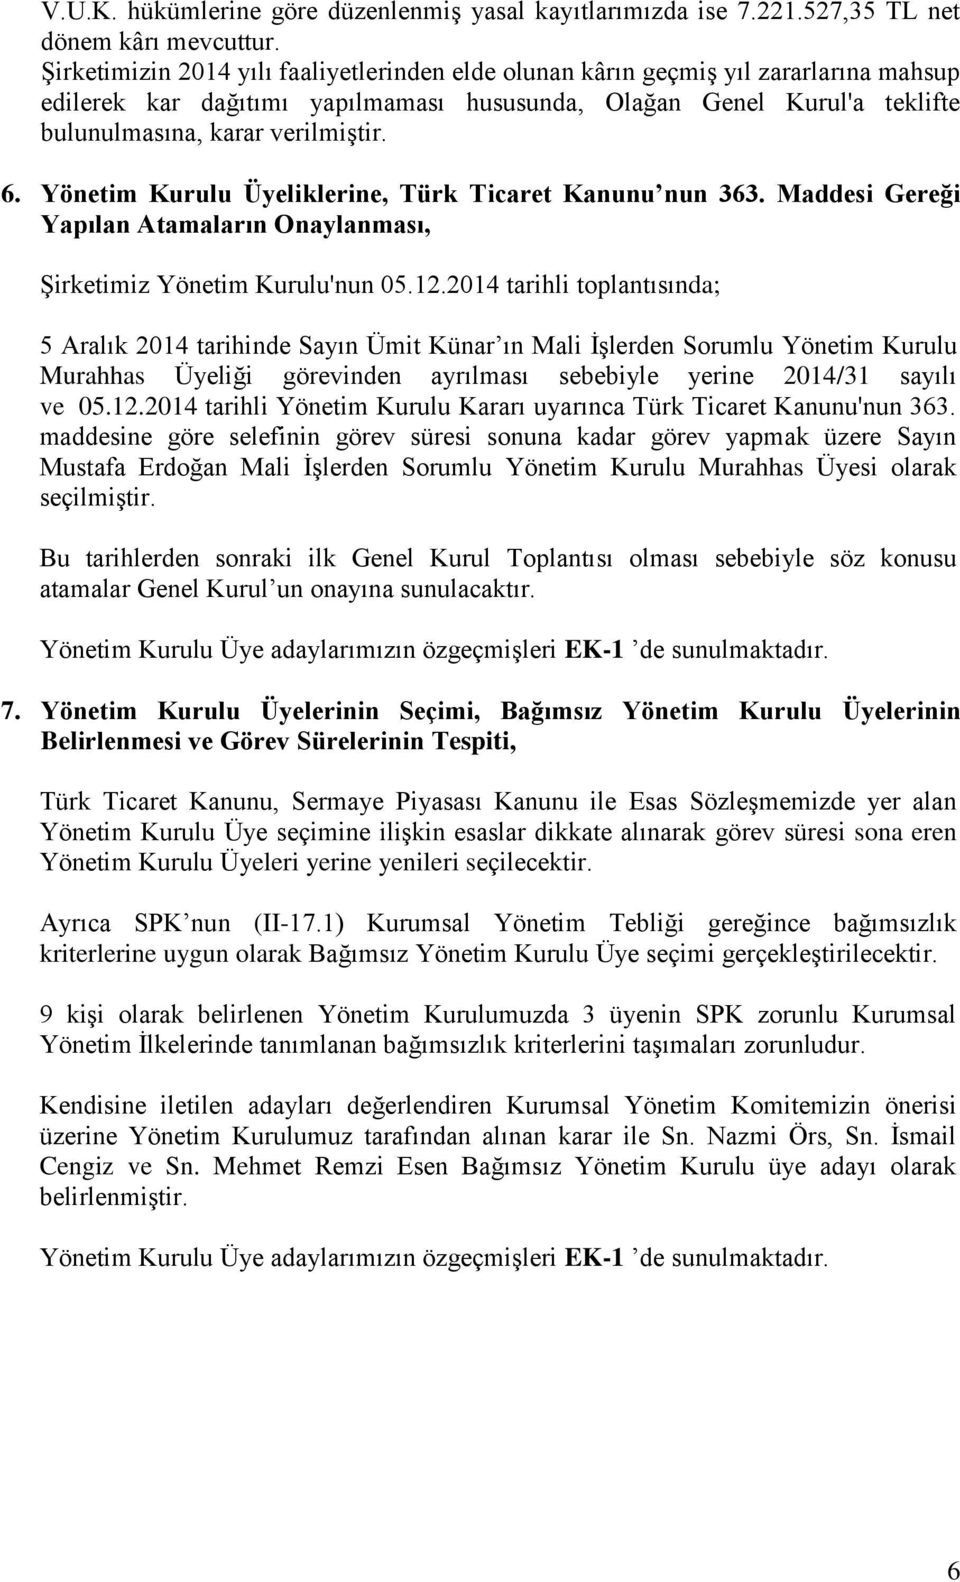 Yönetim Kurulu Üyeliklerine, Türk Ticaret Kanunu nun 363. Maddesi Gereği Yapılan Atamaların Onaylanması, Şirketimiz Yönetim Kurulu'nun 05.12.